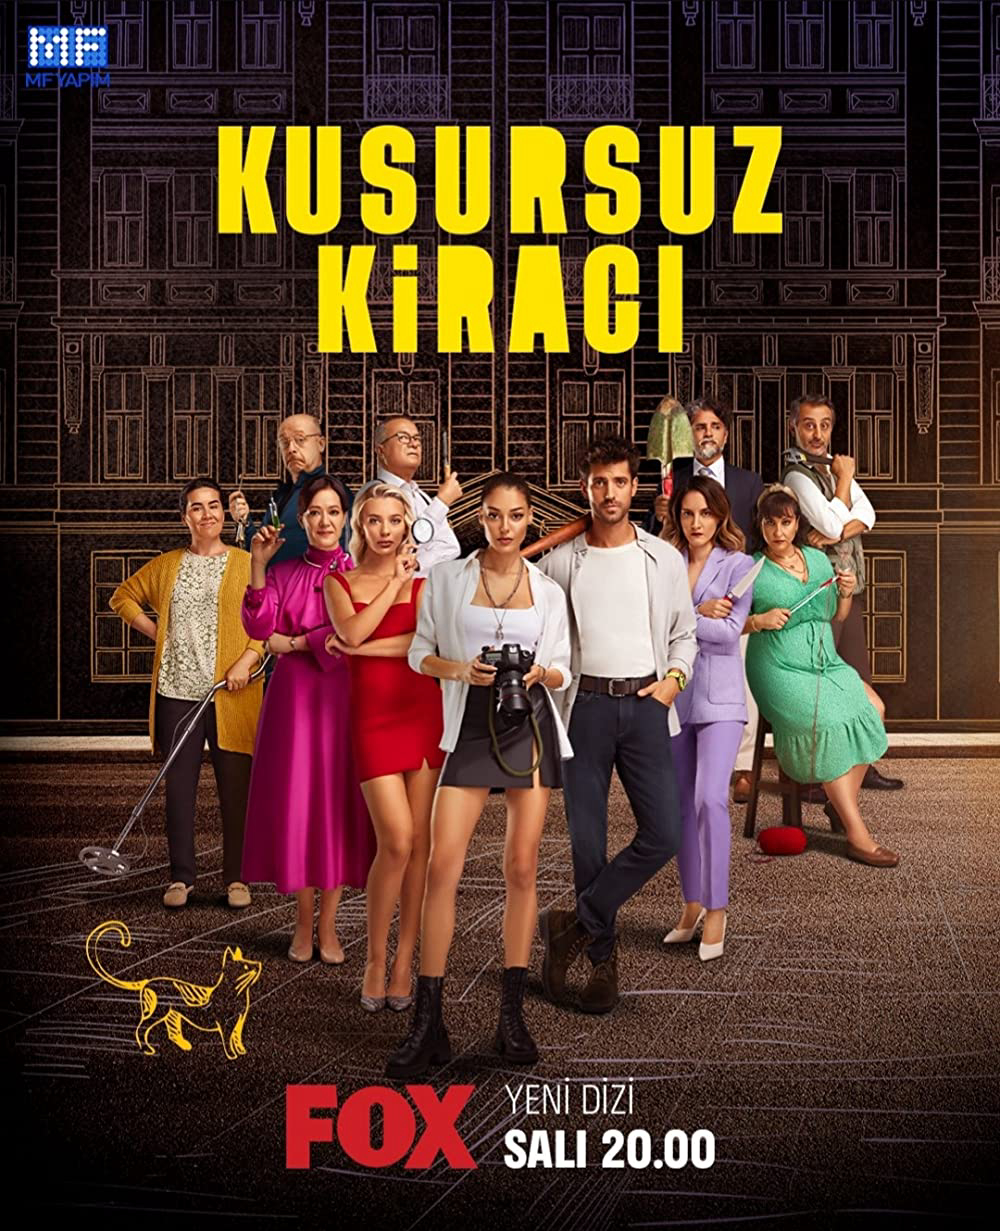 Người Thuê Hoàn Hảo - Kusursuz Kiracı